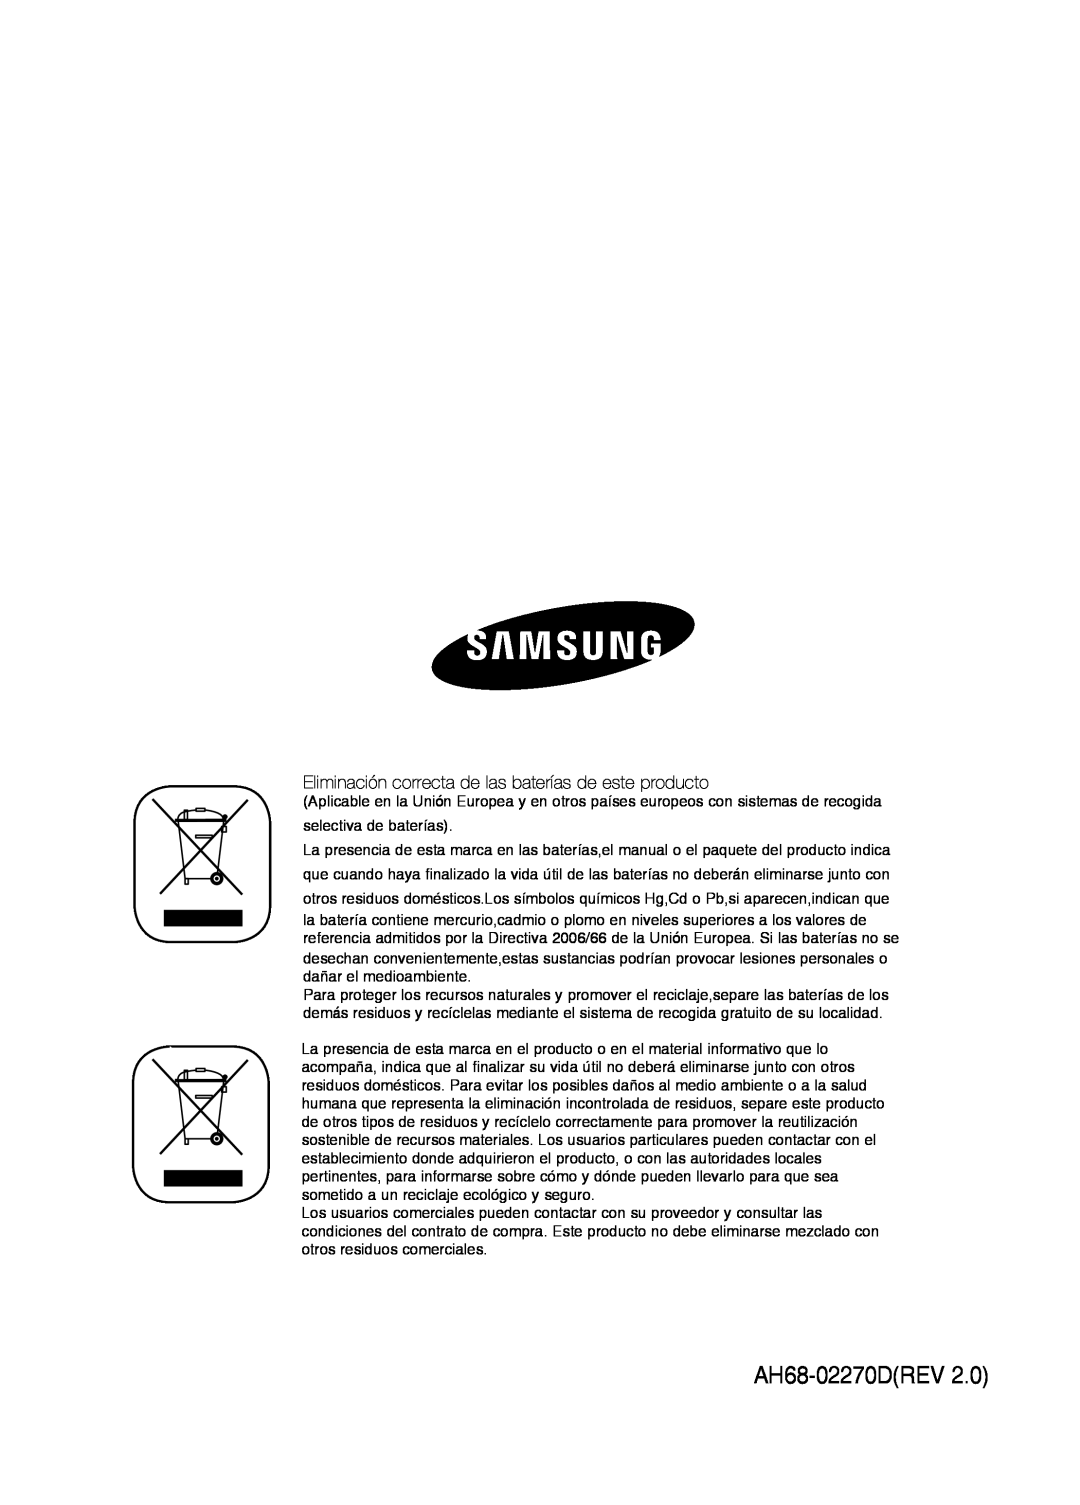 Samsung MM-C330/XEF manual ah68-02270DREV, Eliminación correcta de las baterías de este producto 